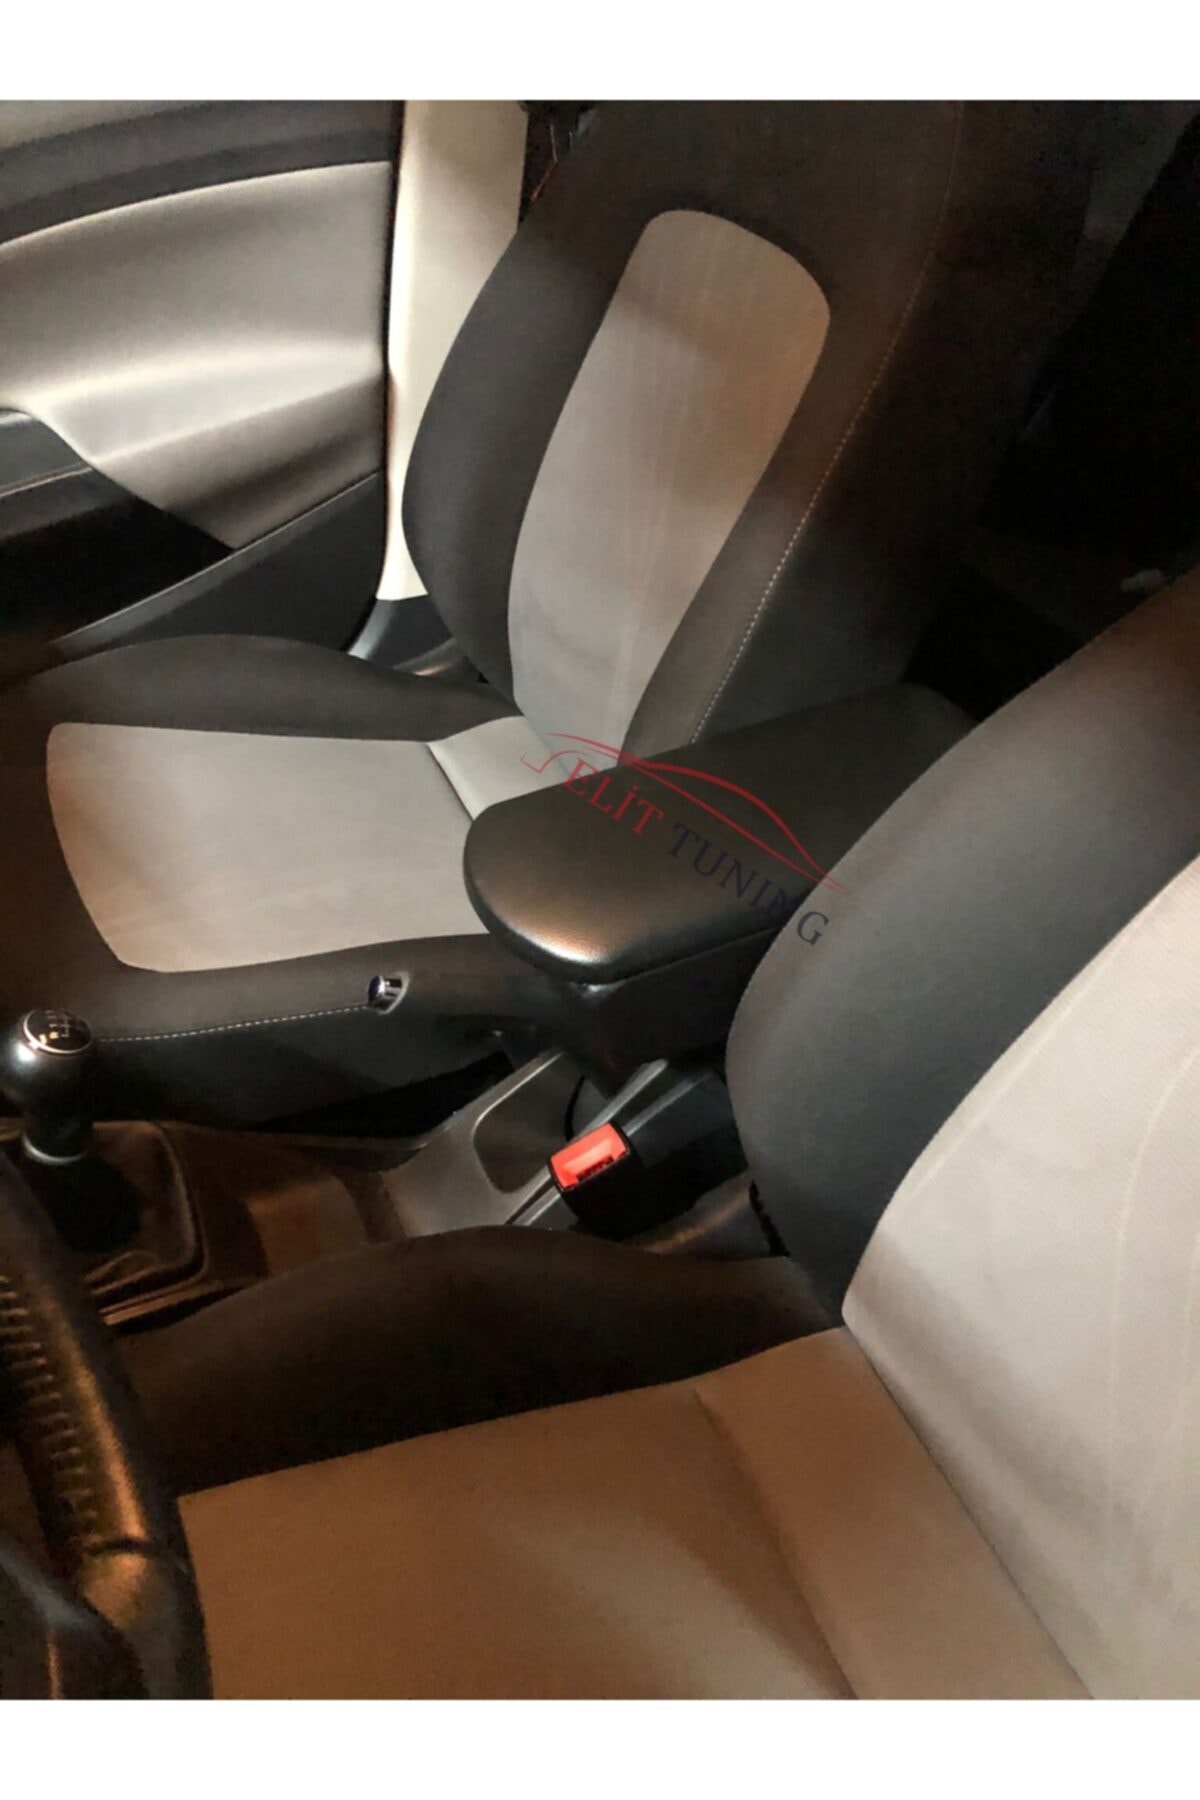 ElitTuning Peugeot 206 Deri Kol Dayama Kolçak Siyah Özel Üretim Mdf